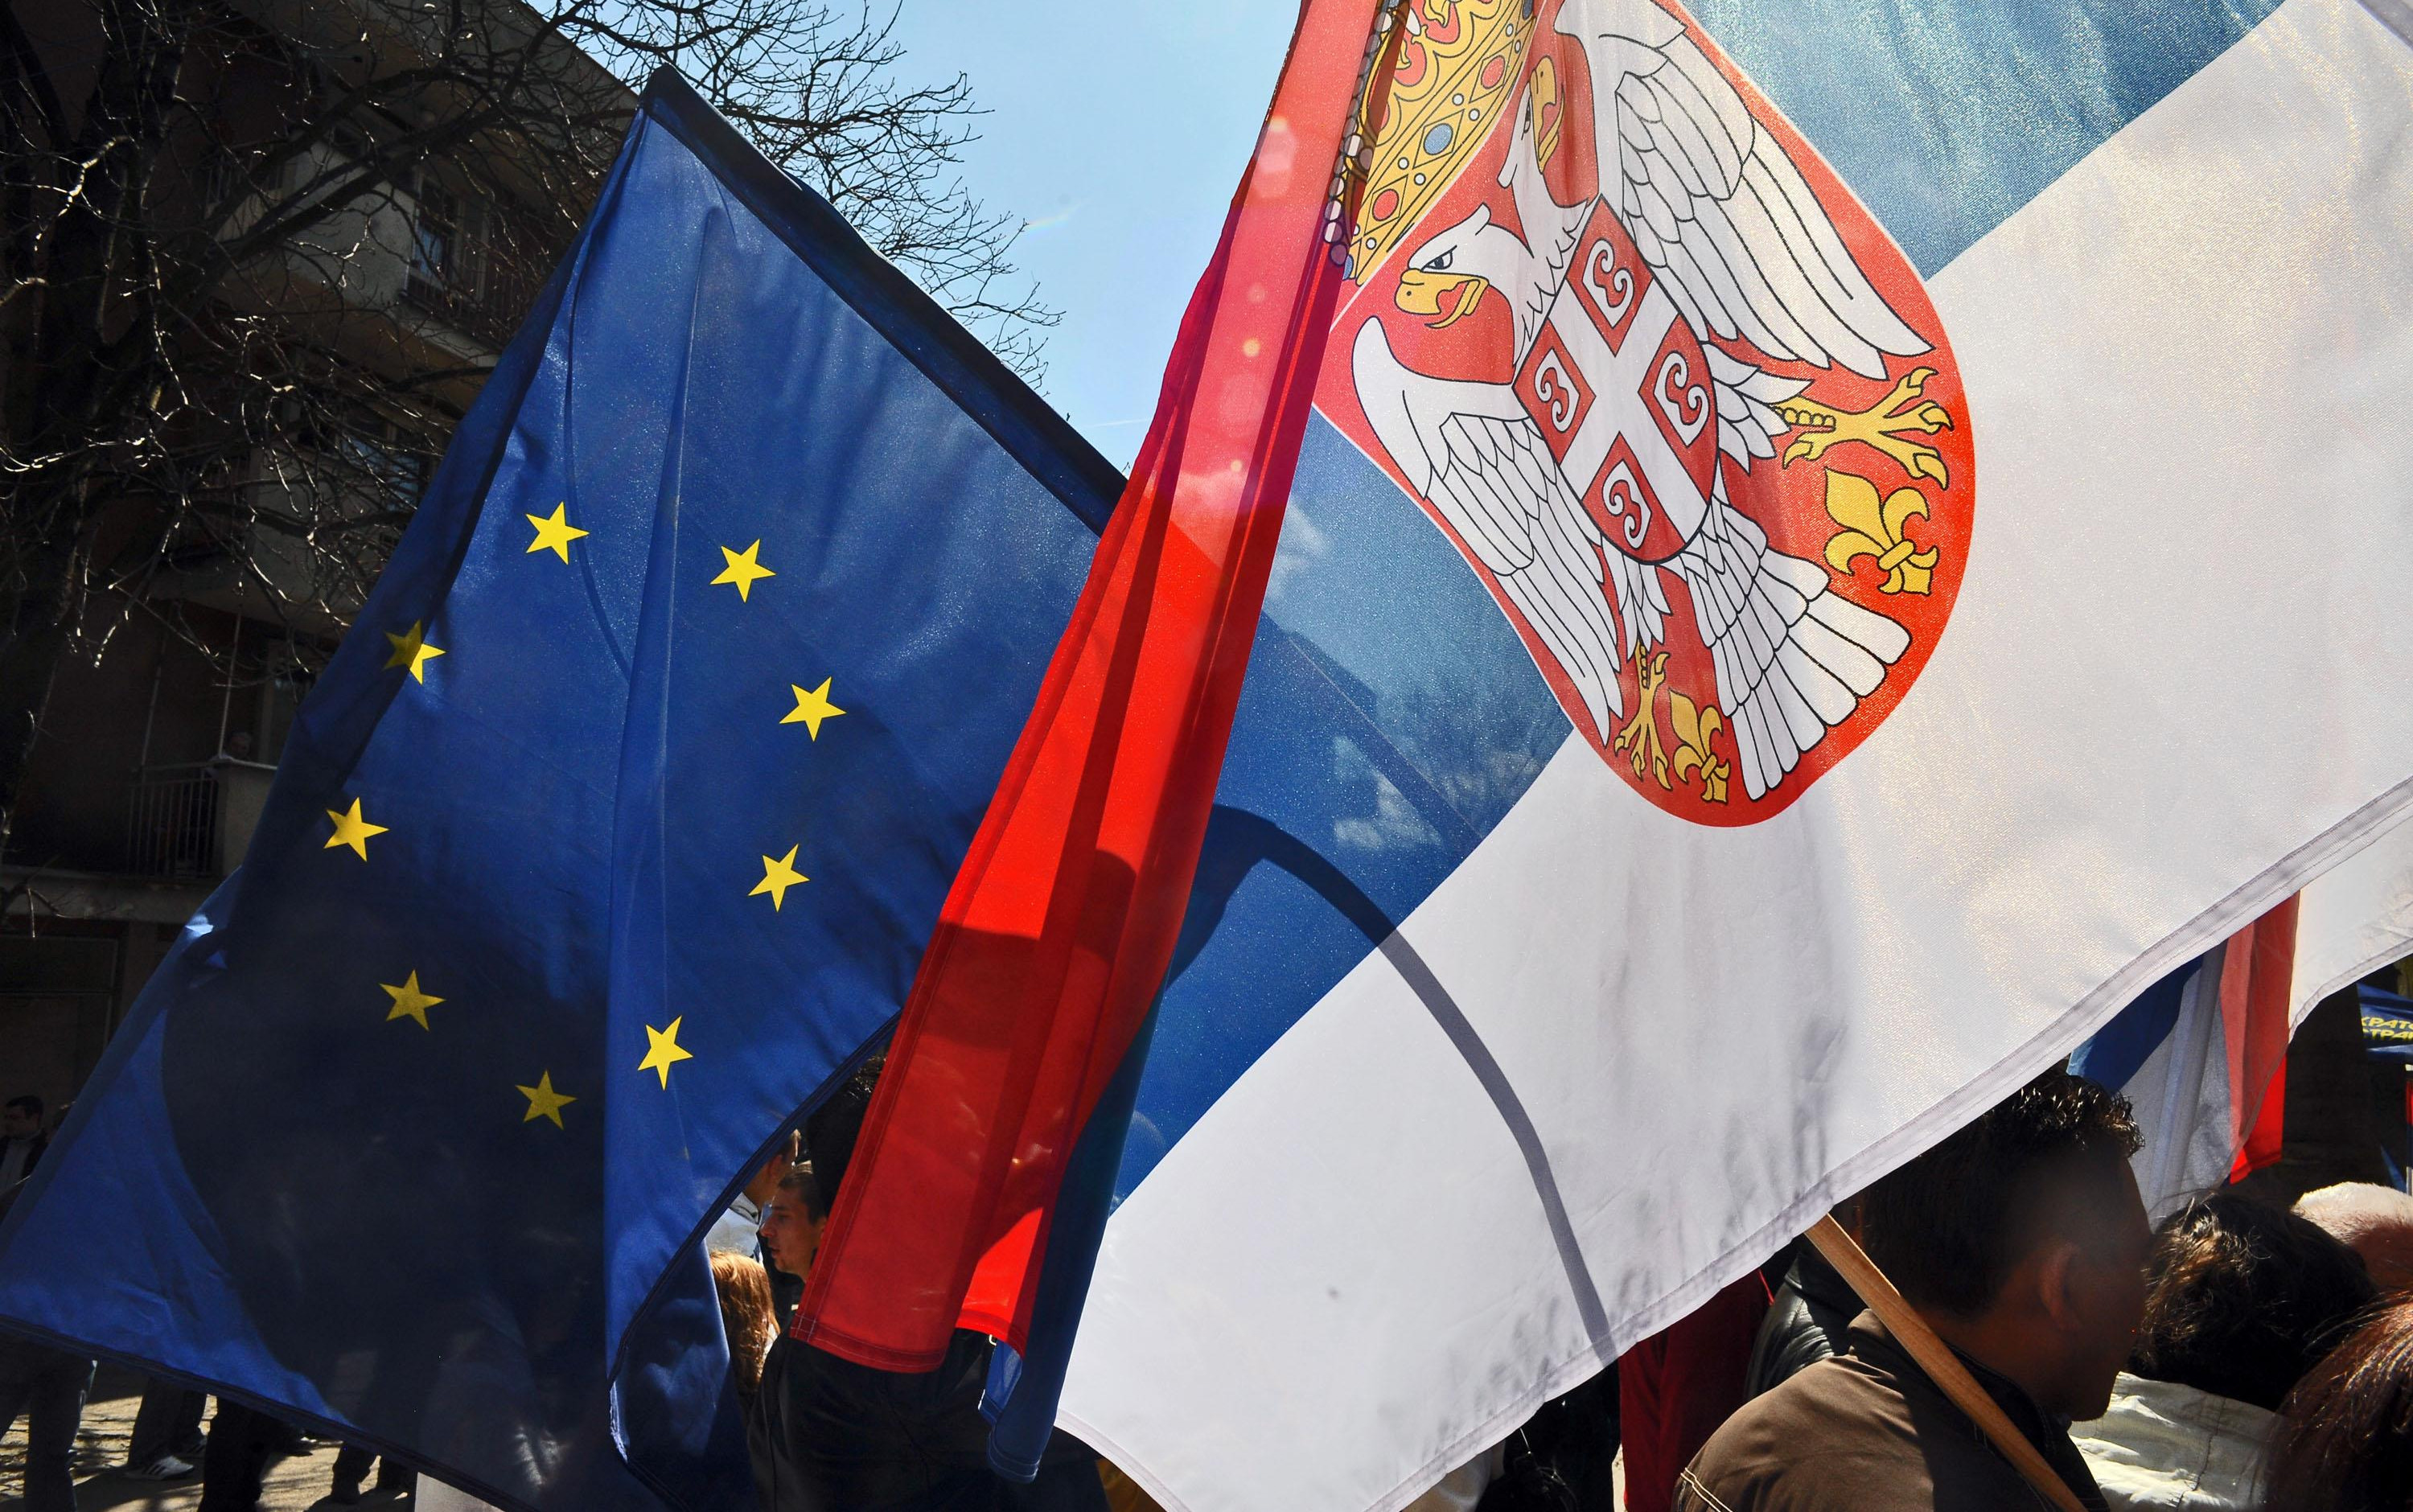 OTVARAMO JOŠ JEDNO POGLAVLJE! Srbija dobila saglasnost za otvarnje poglavlja o slobodi kretanja!